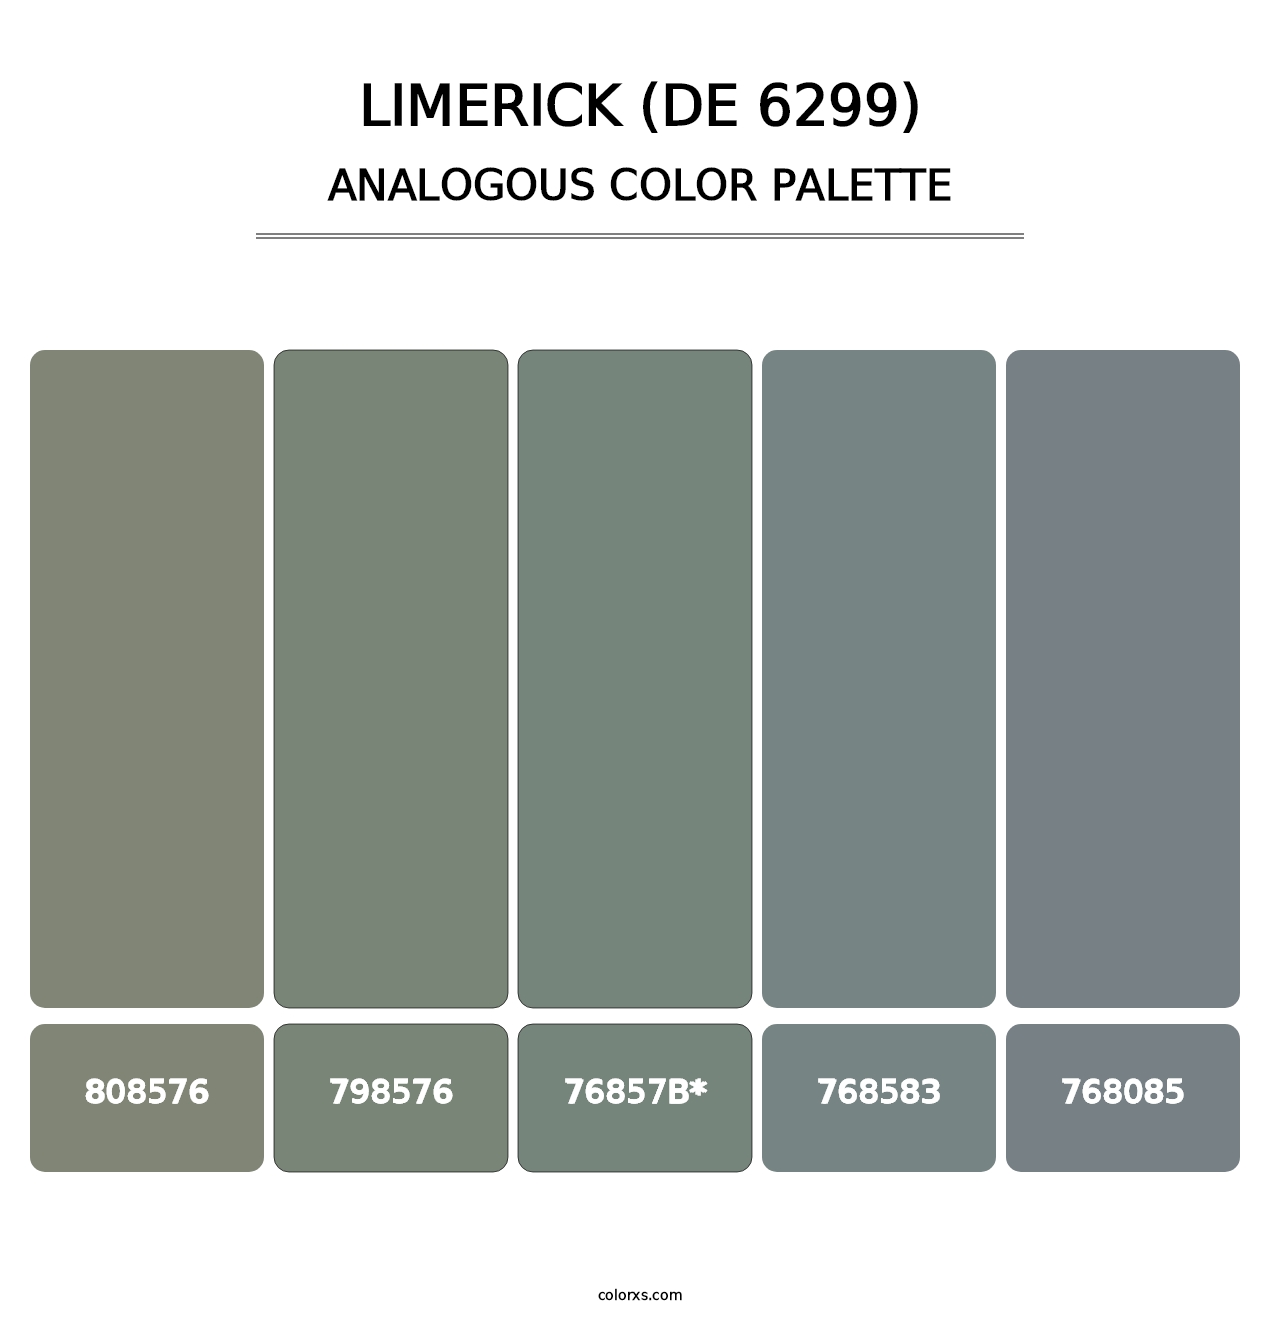 Limerick (DE 6299) - Analogous Color Palette